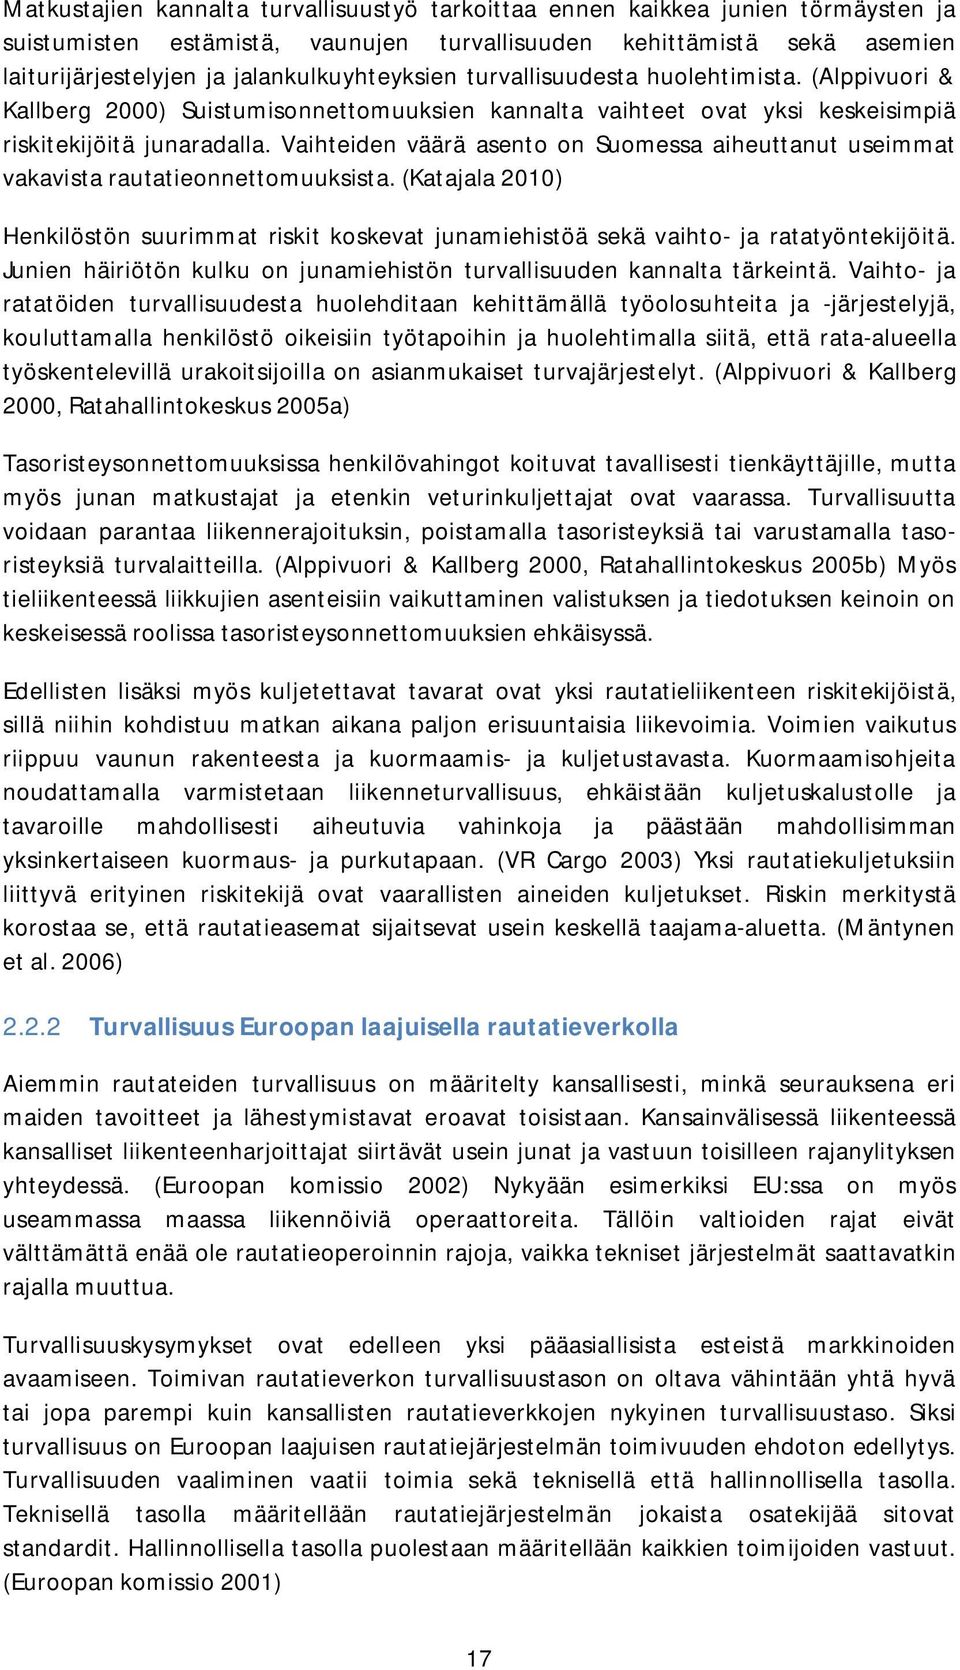 Vaihteiden väärä asento on Suomessa aiheuttanut useimmat vakavista rautatieonnettomuuksista. (Katajala 2010) Henkilöstön suurimmat riskit koskevat junamiehistöä sekä vaihto- ja ratatyöntekijöitä.